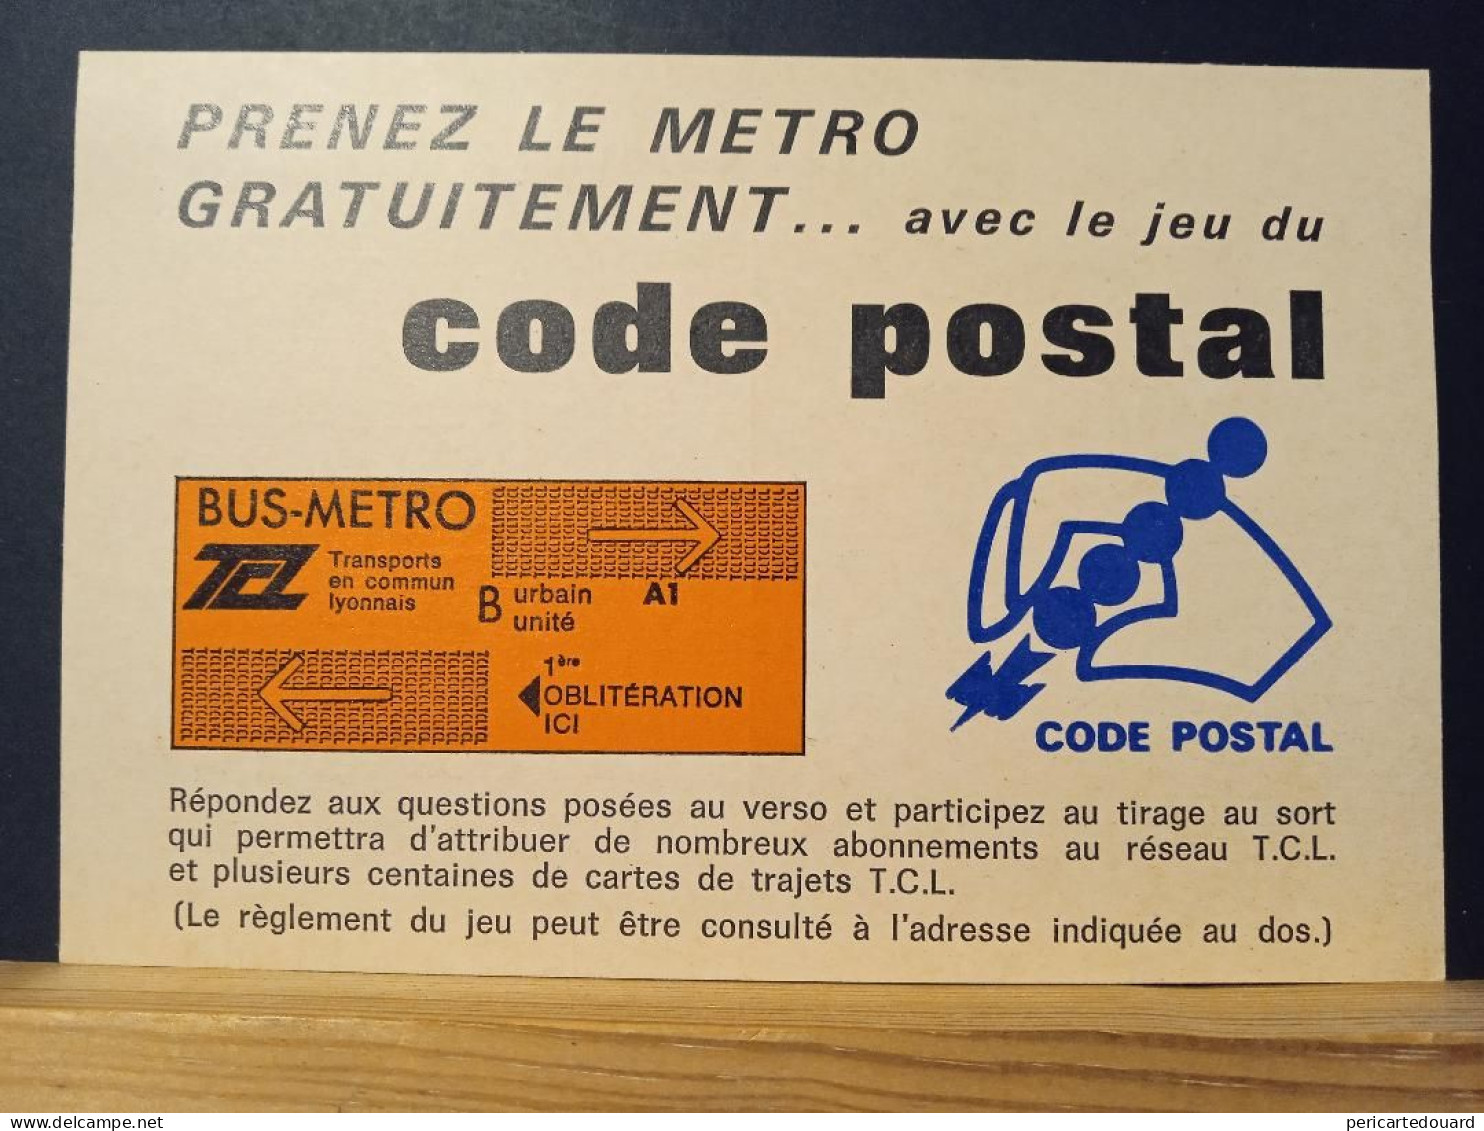 Code Postal, Carte Postale En Franchise "Jeu Du Code Postal, Direction Des Postes Du Rhone. Neuve - Lettres & Documents